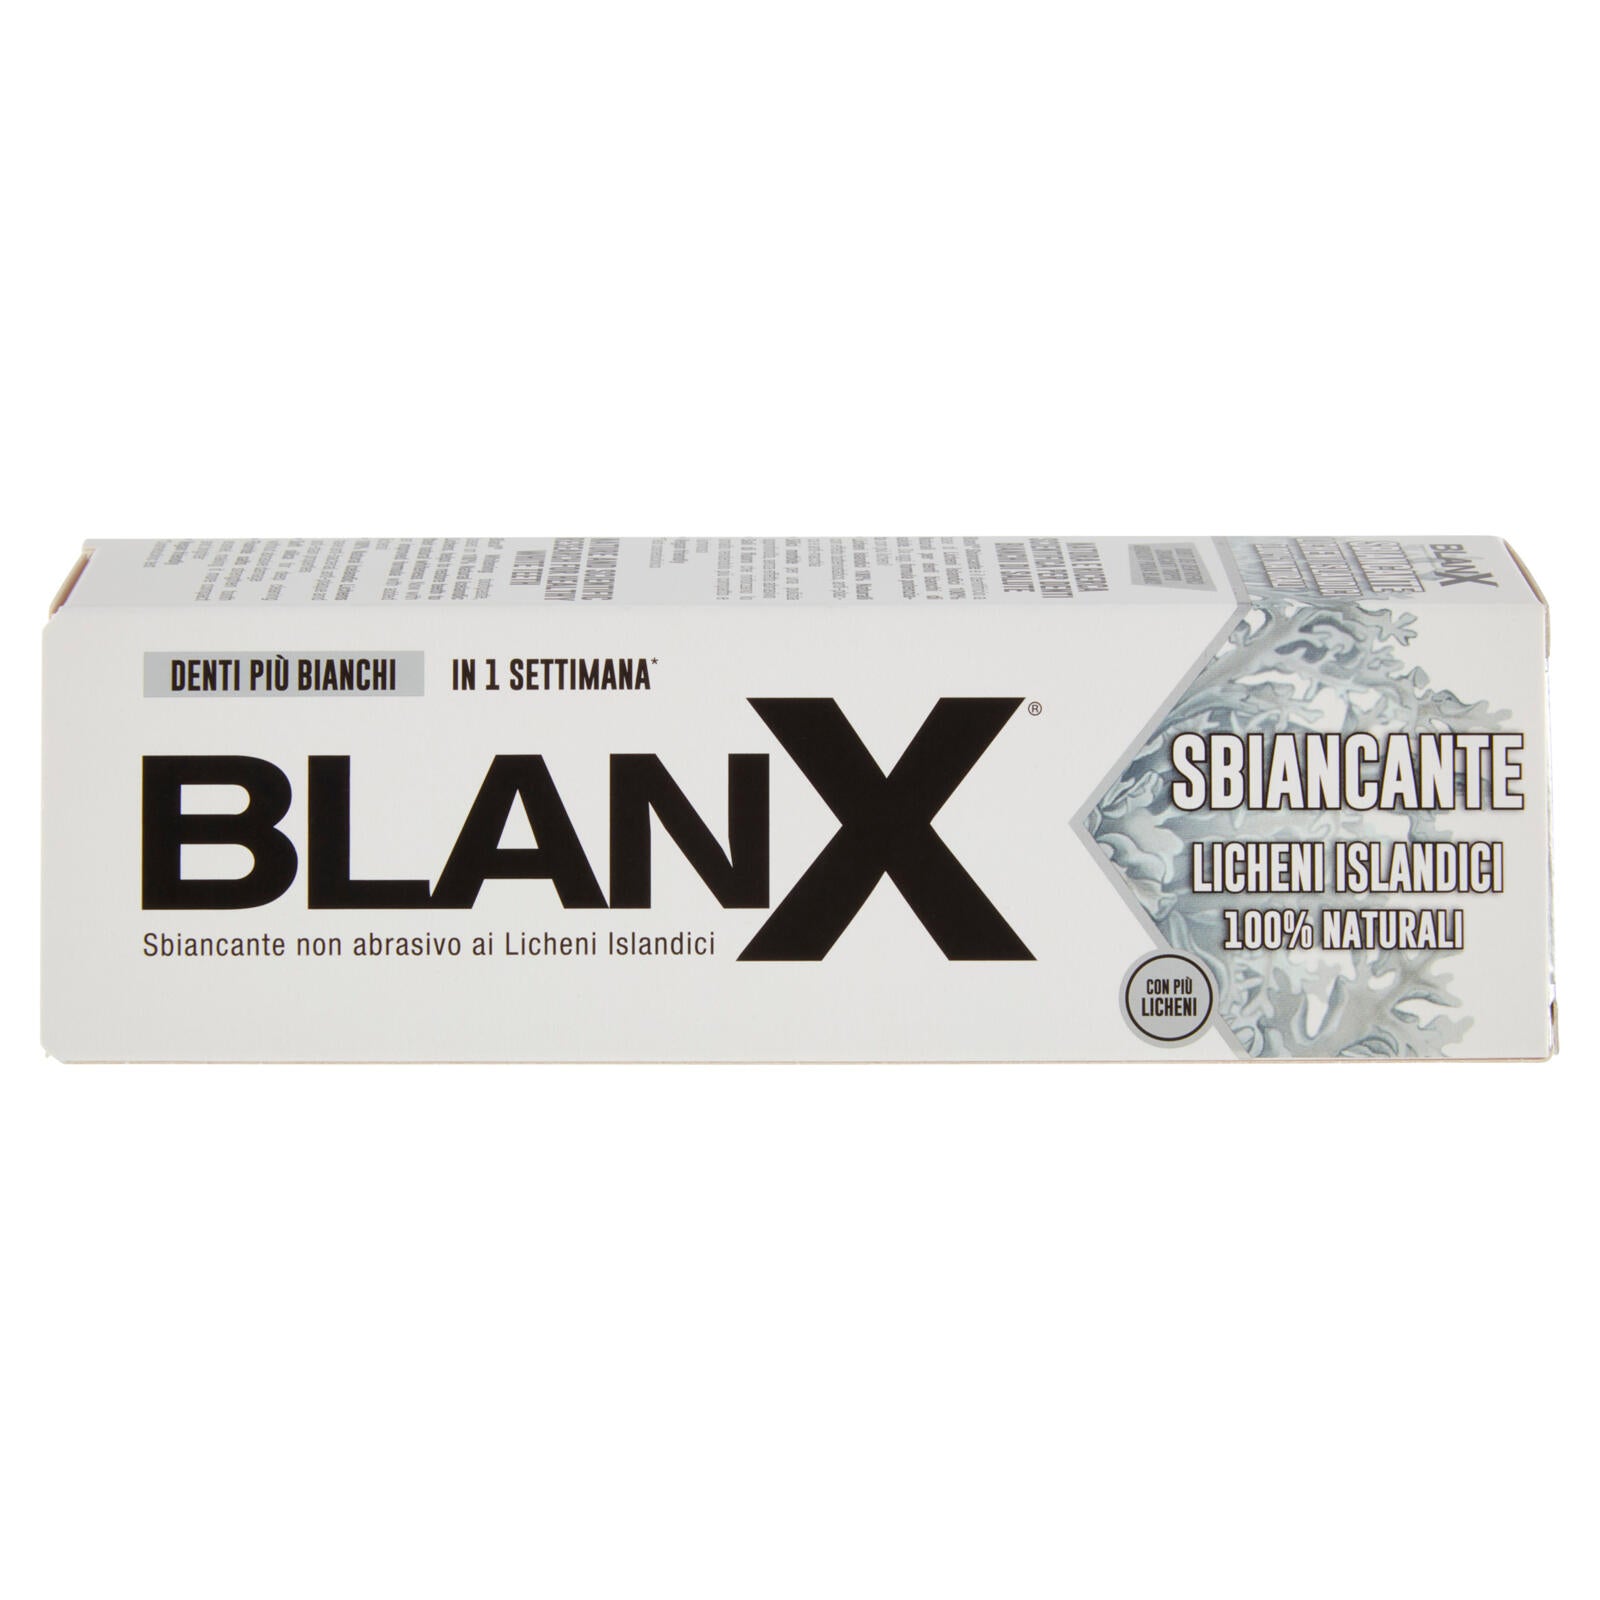 Blanx Sbiancante Licheni Islandici 100% Naturali 75 ml